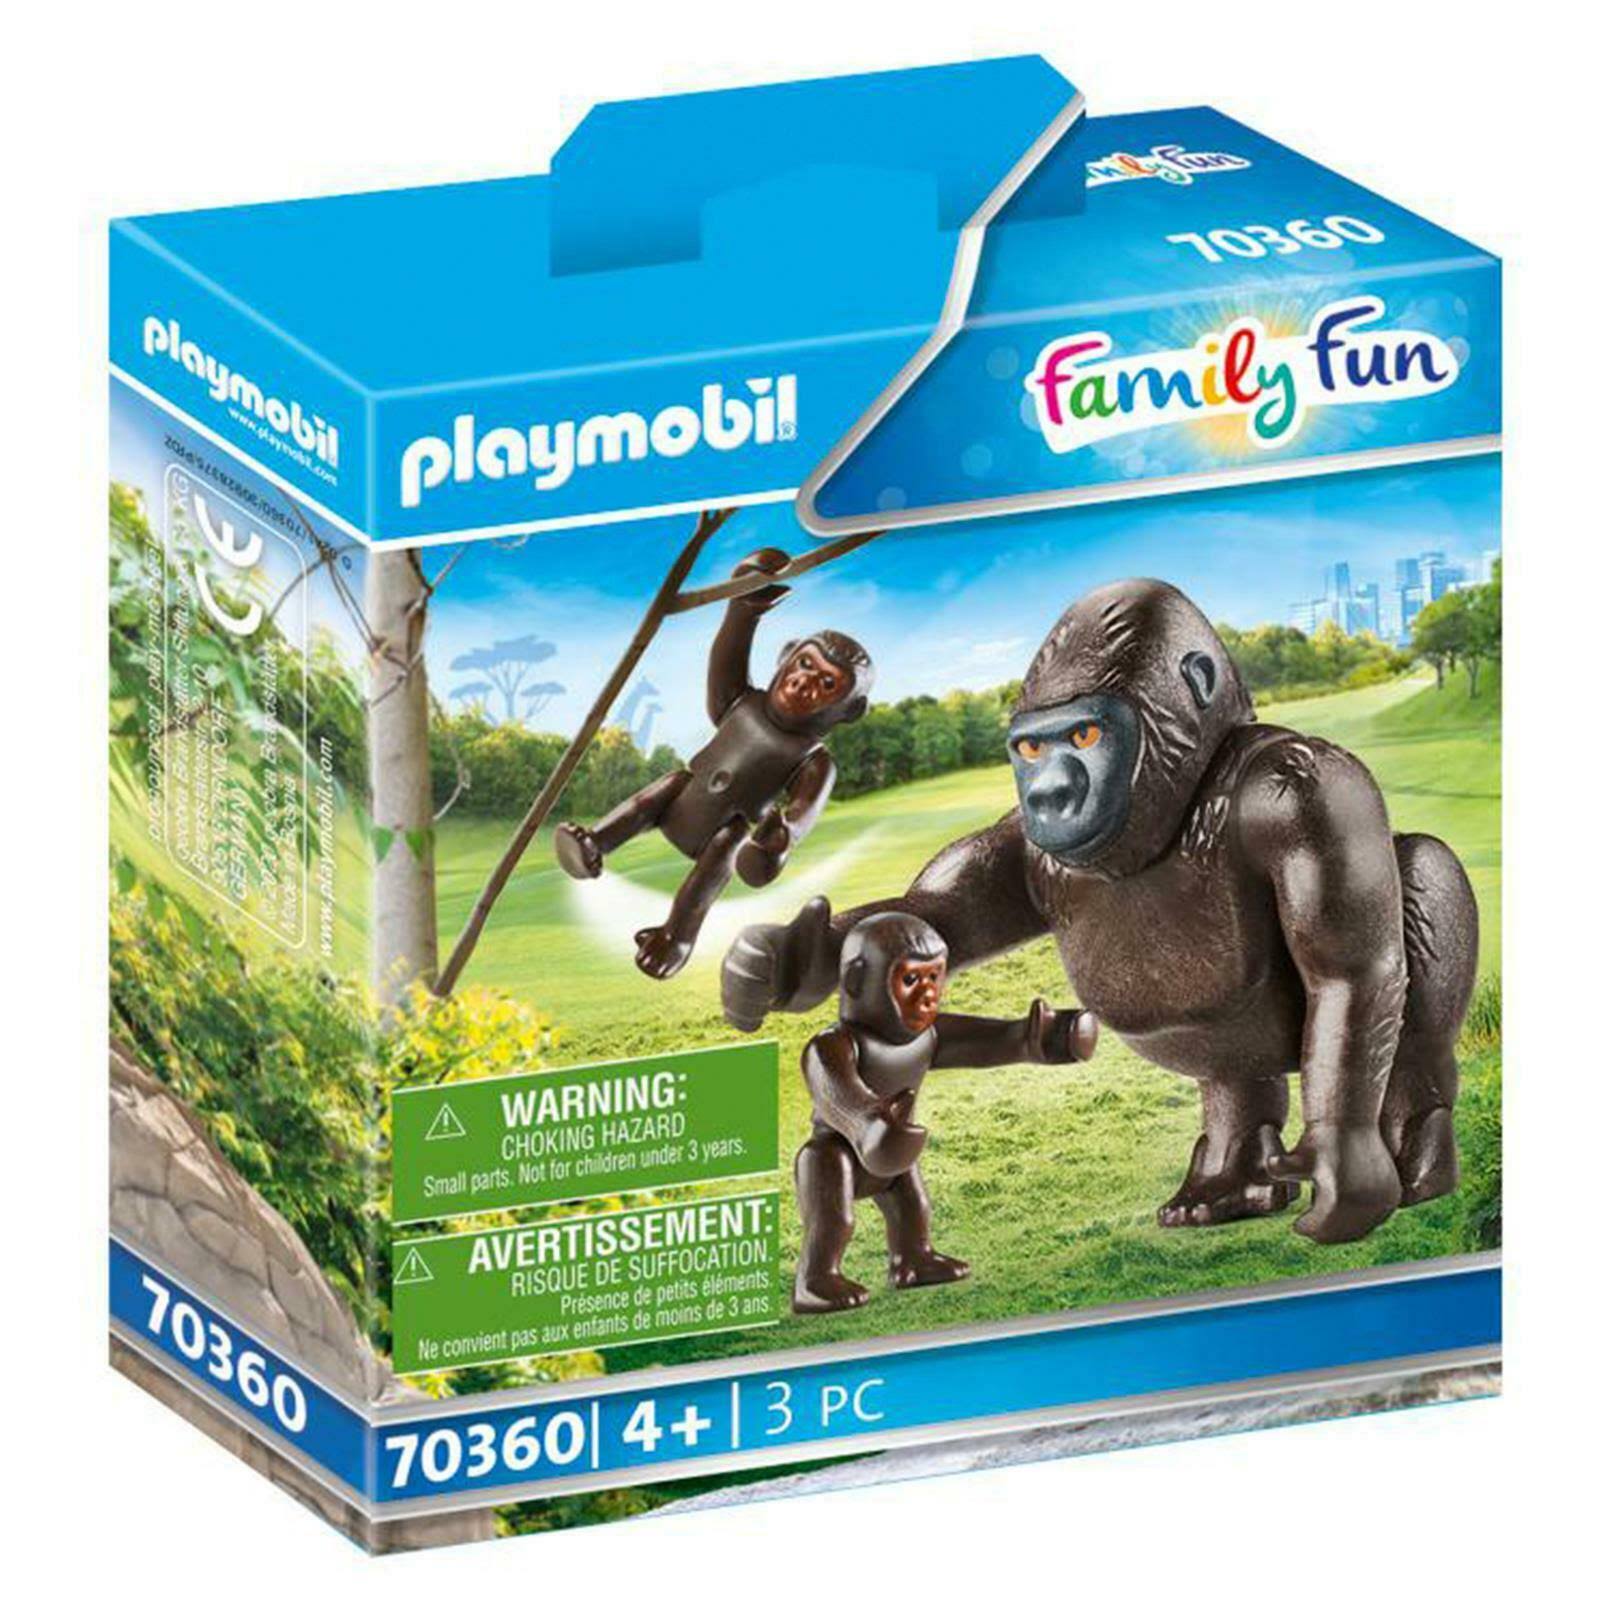 Playmobil 70360 Family Fun - Gorilla with Babies